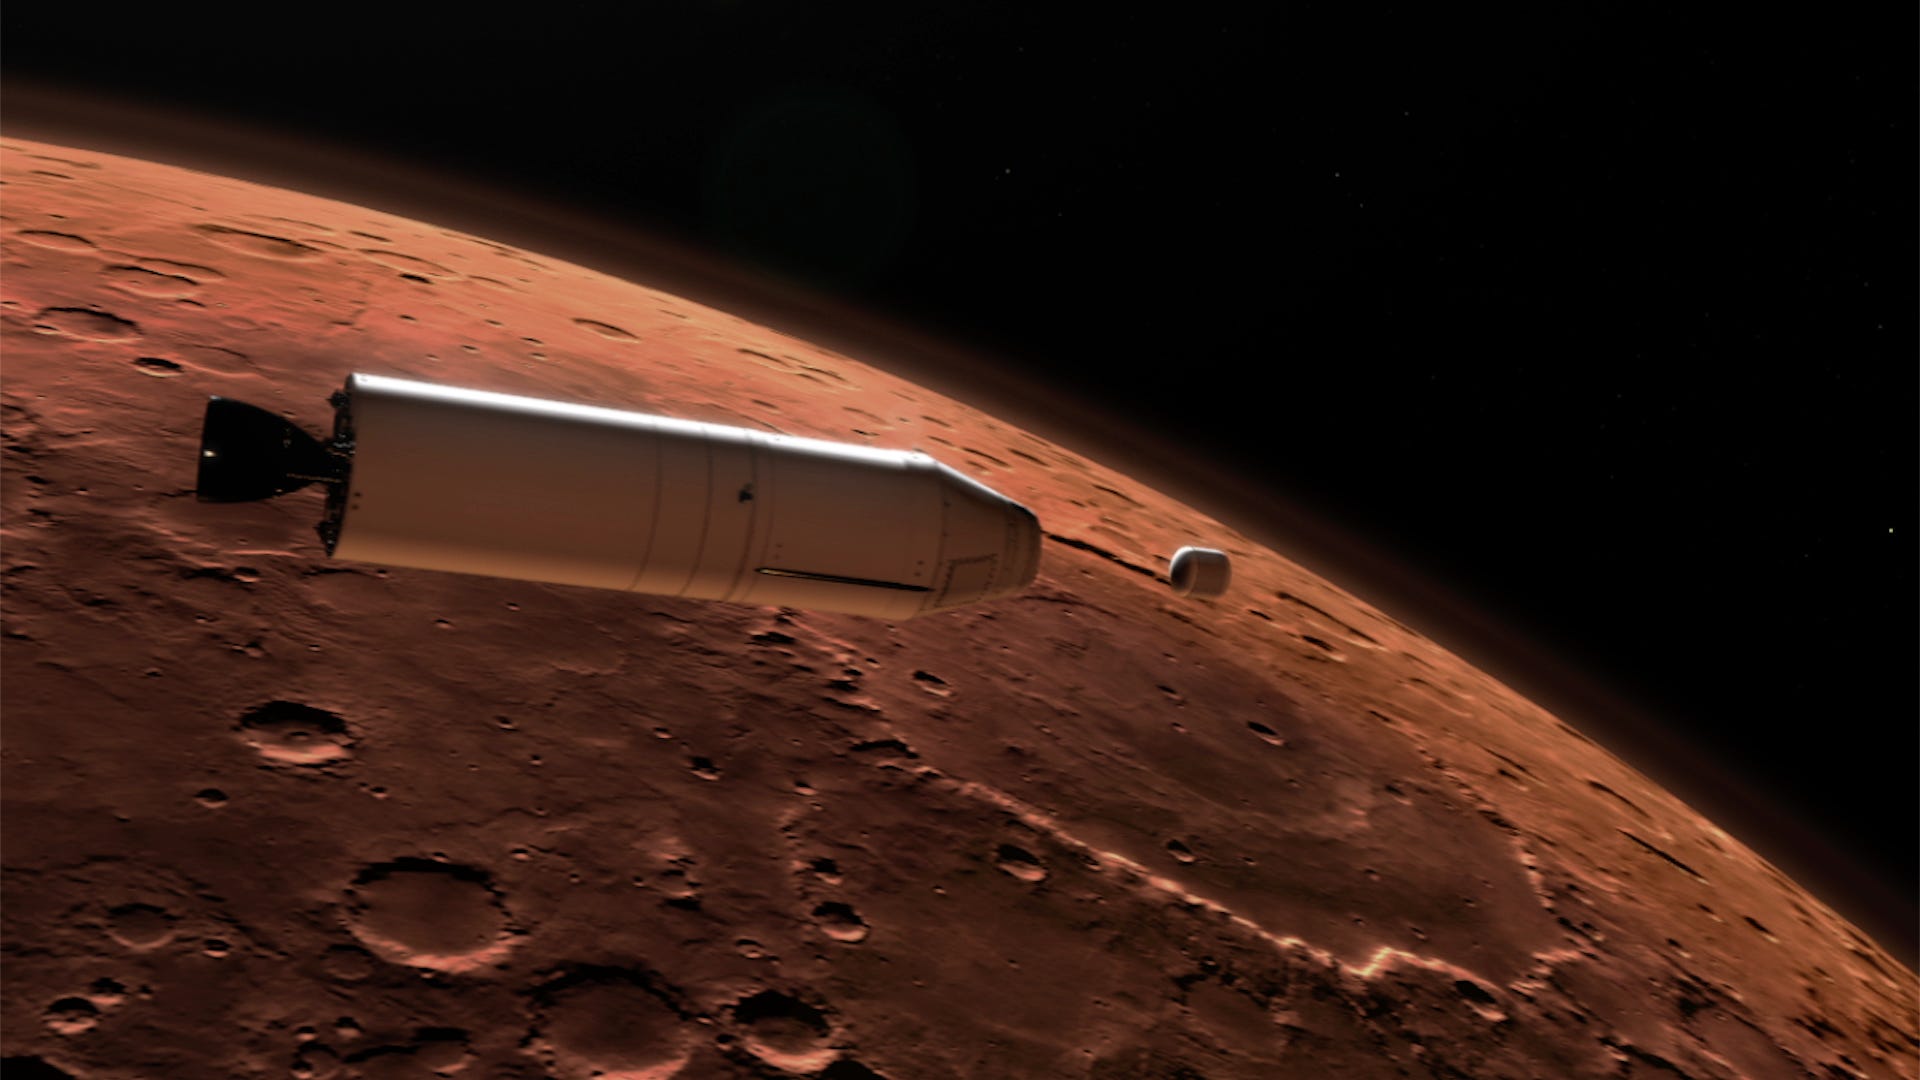 Die Abbildung der Mars-Probenrückführungsmission zeigt eine Minirakete, die einen kleinen Behälter in die Marsumlaufbahn freigibt